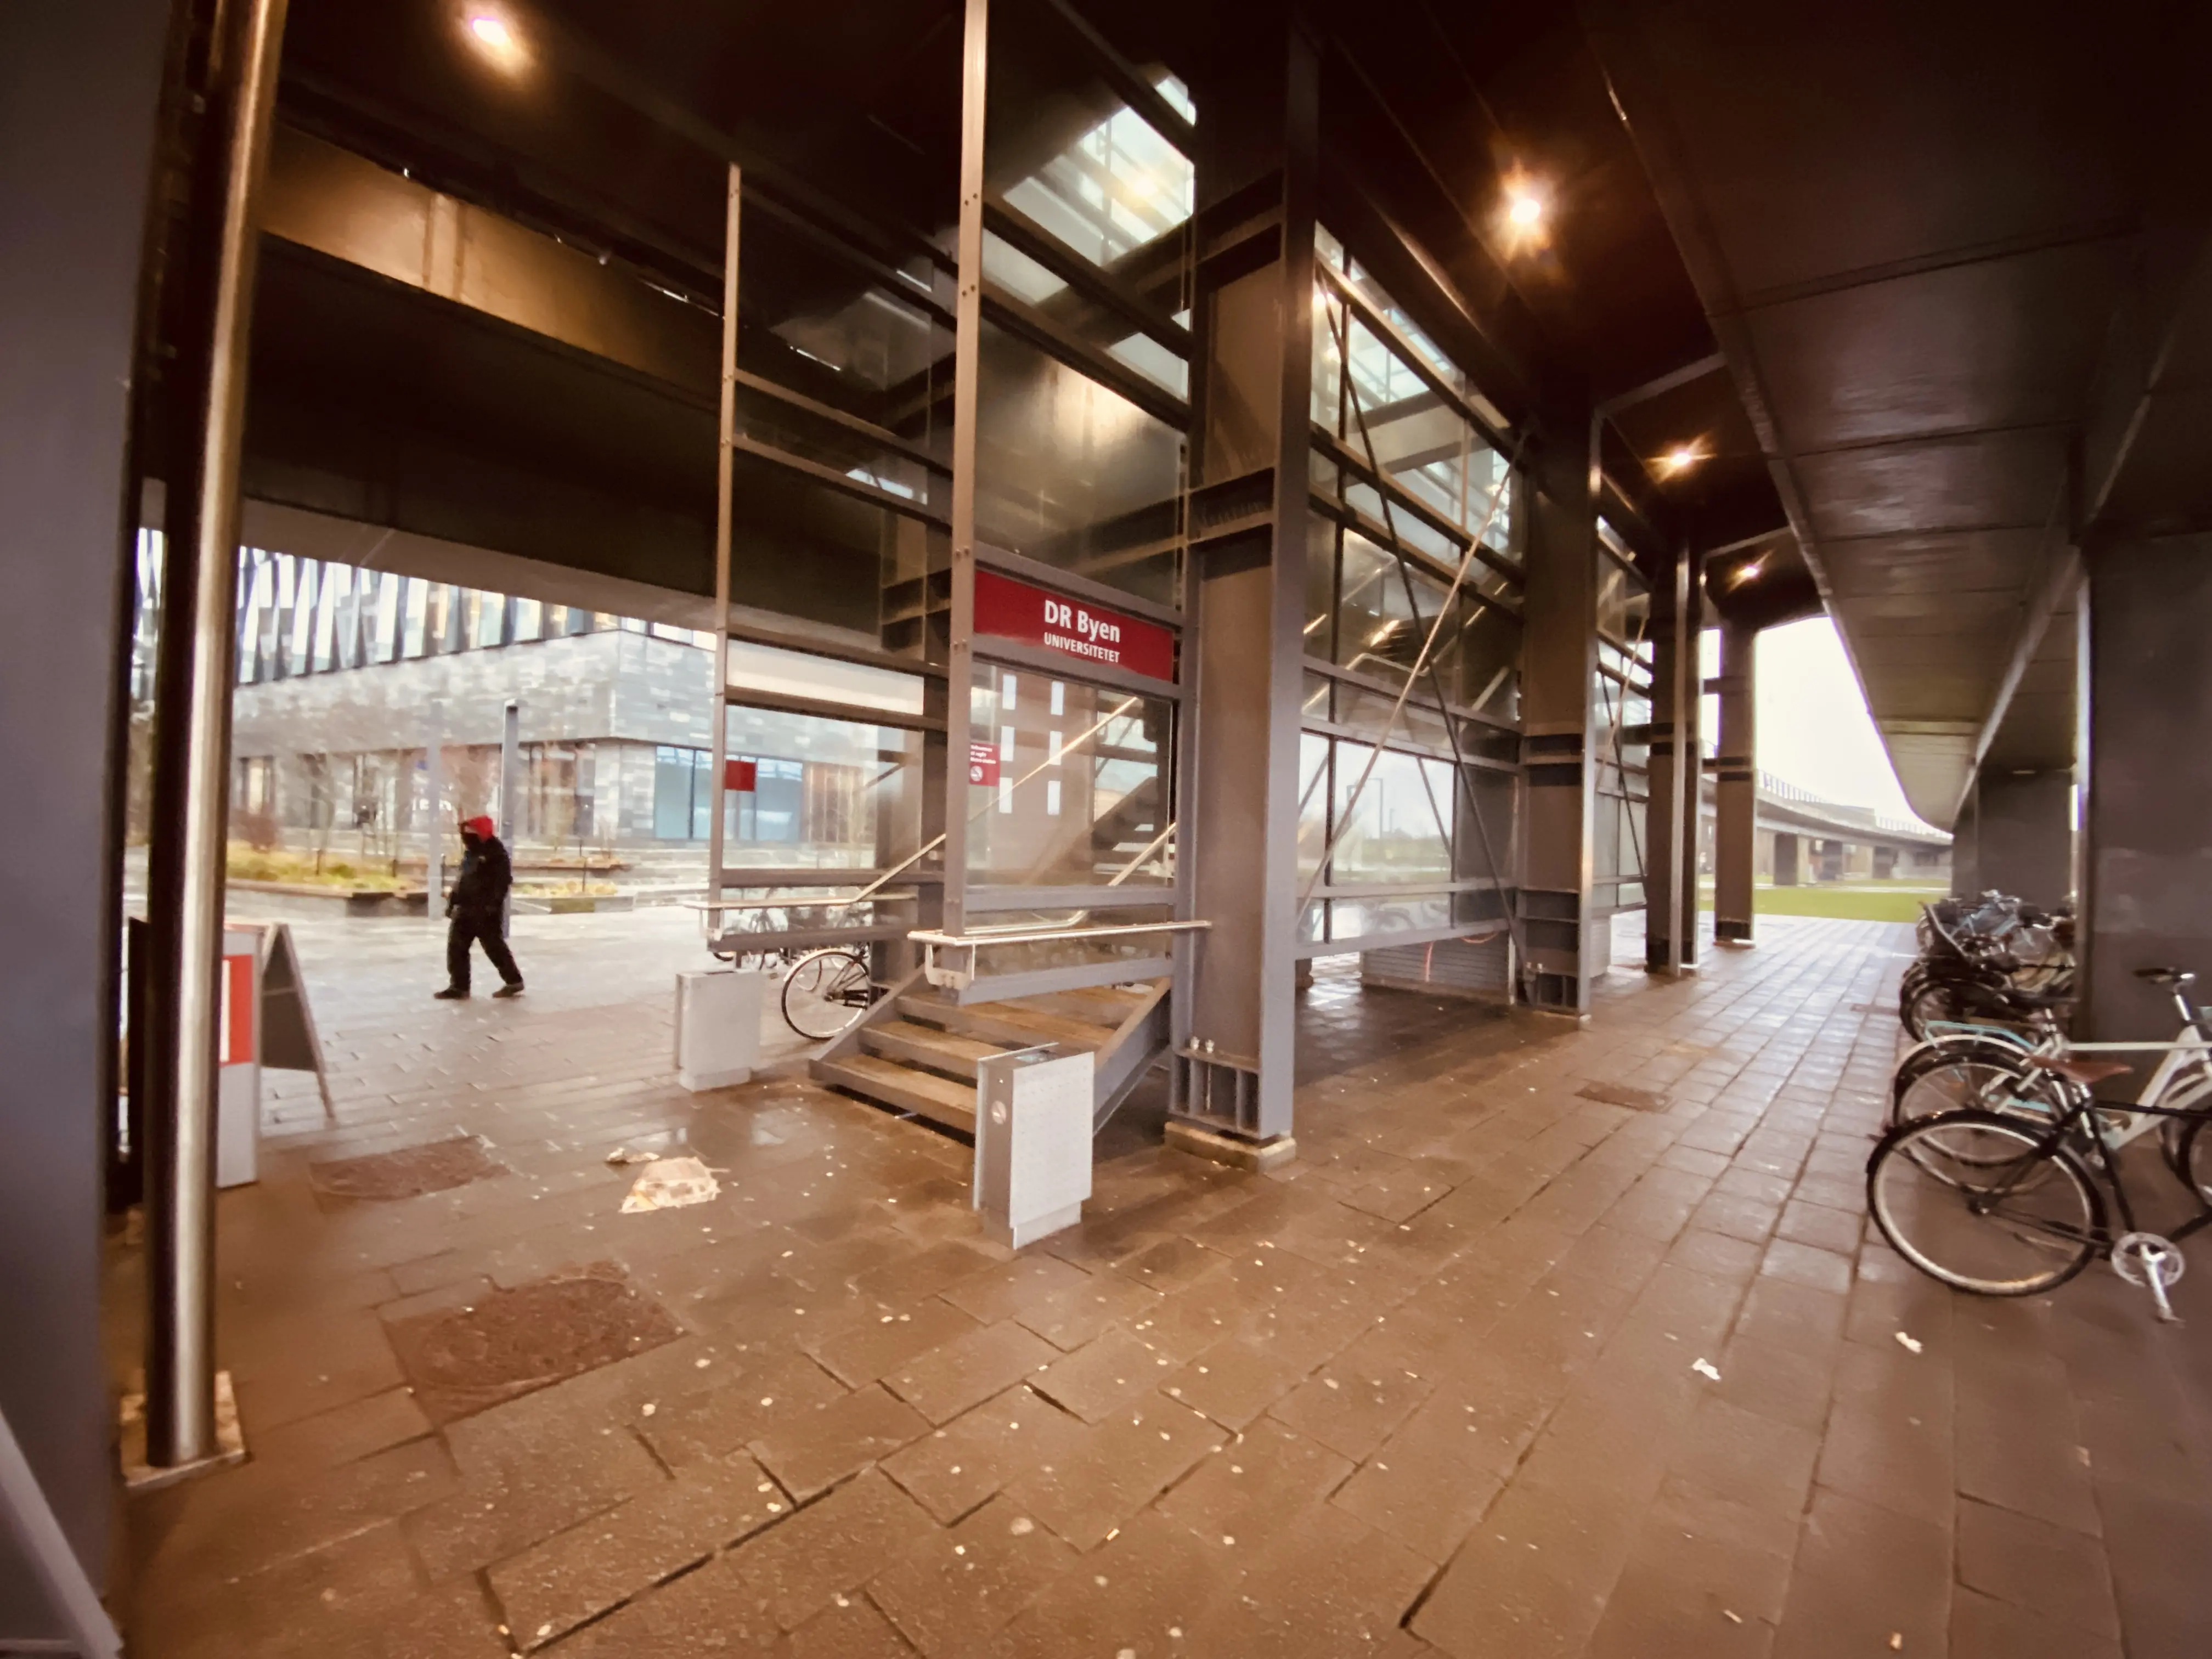 Billede af DR Byen Metrostation.